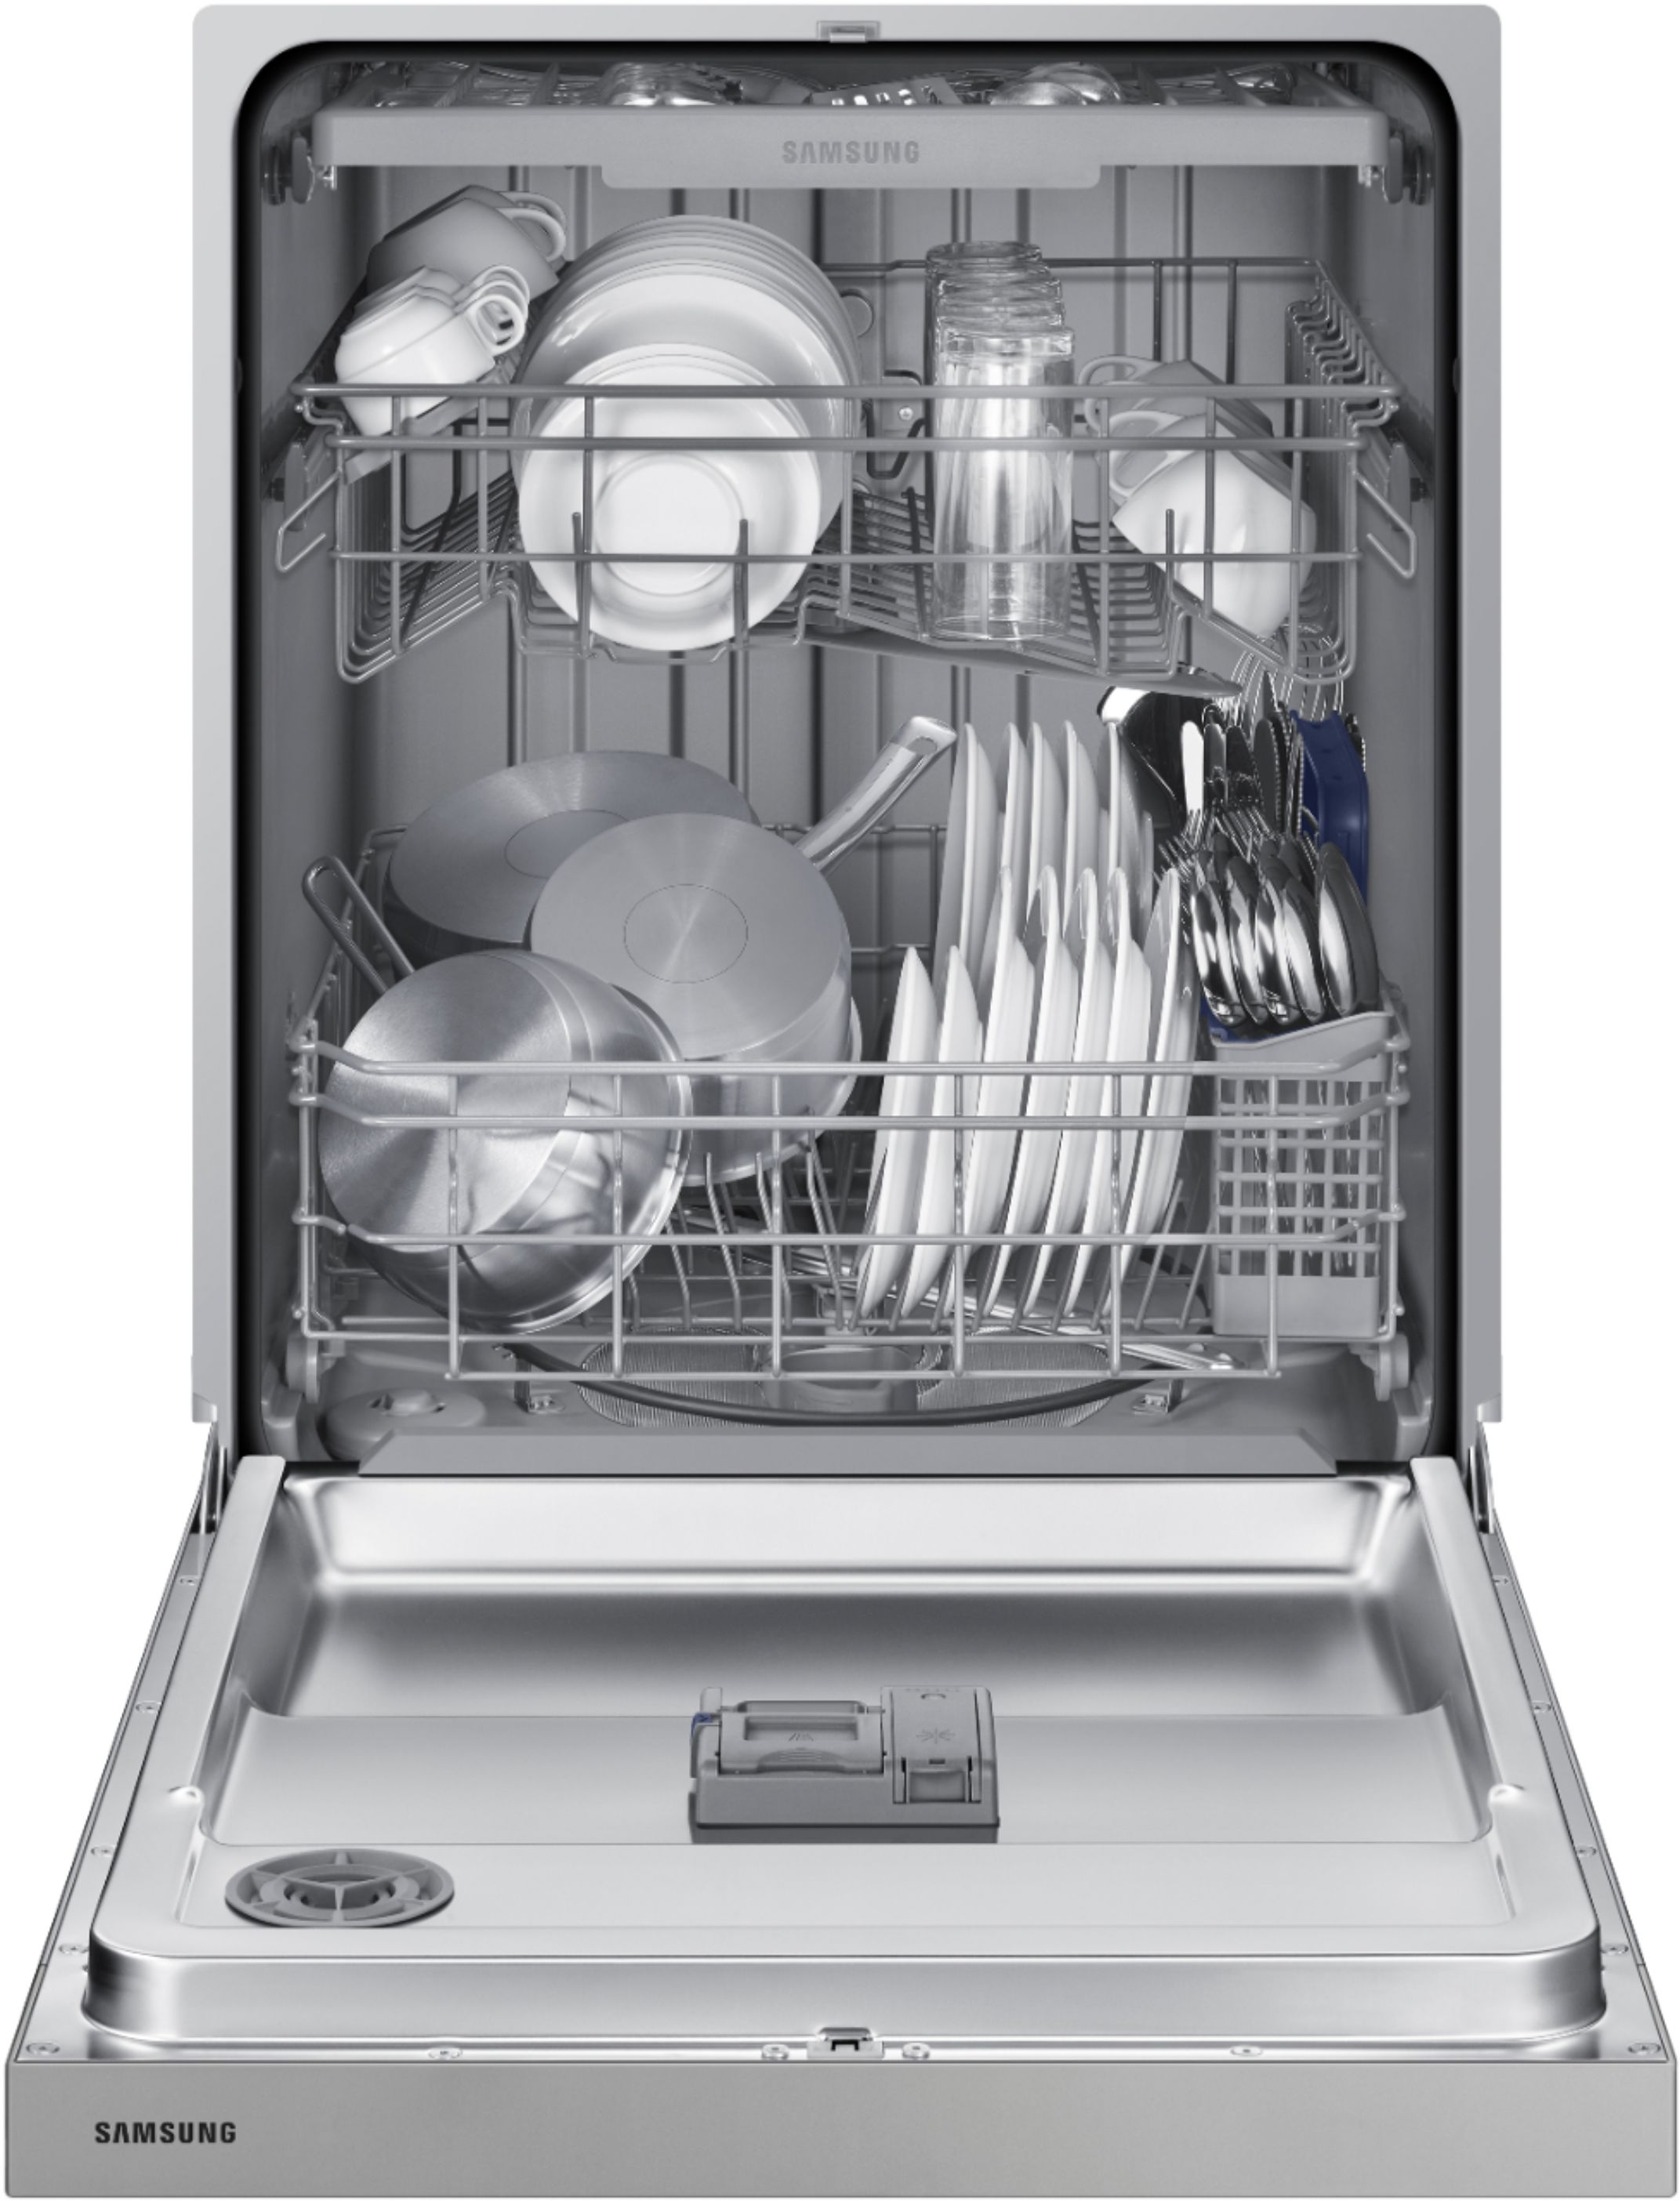 samsung slim dishwasher